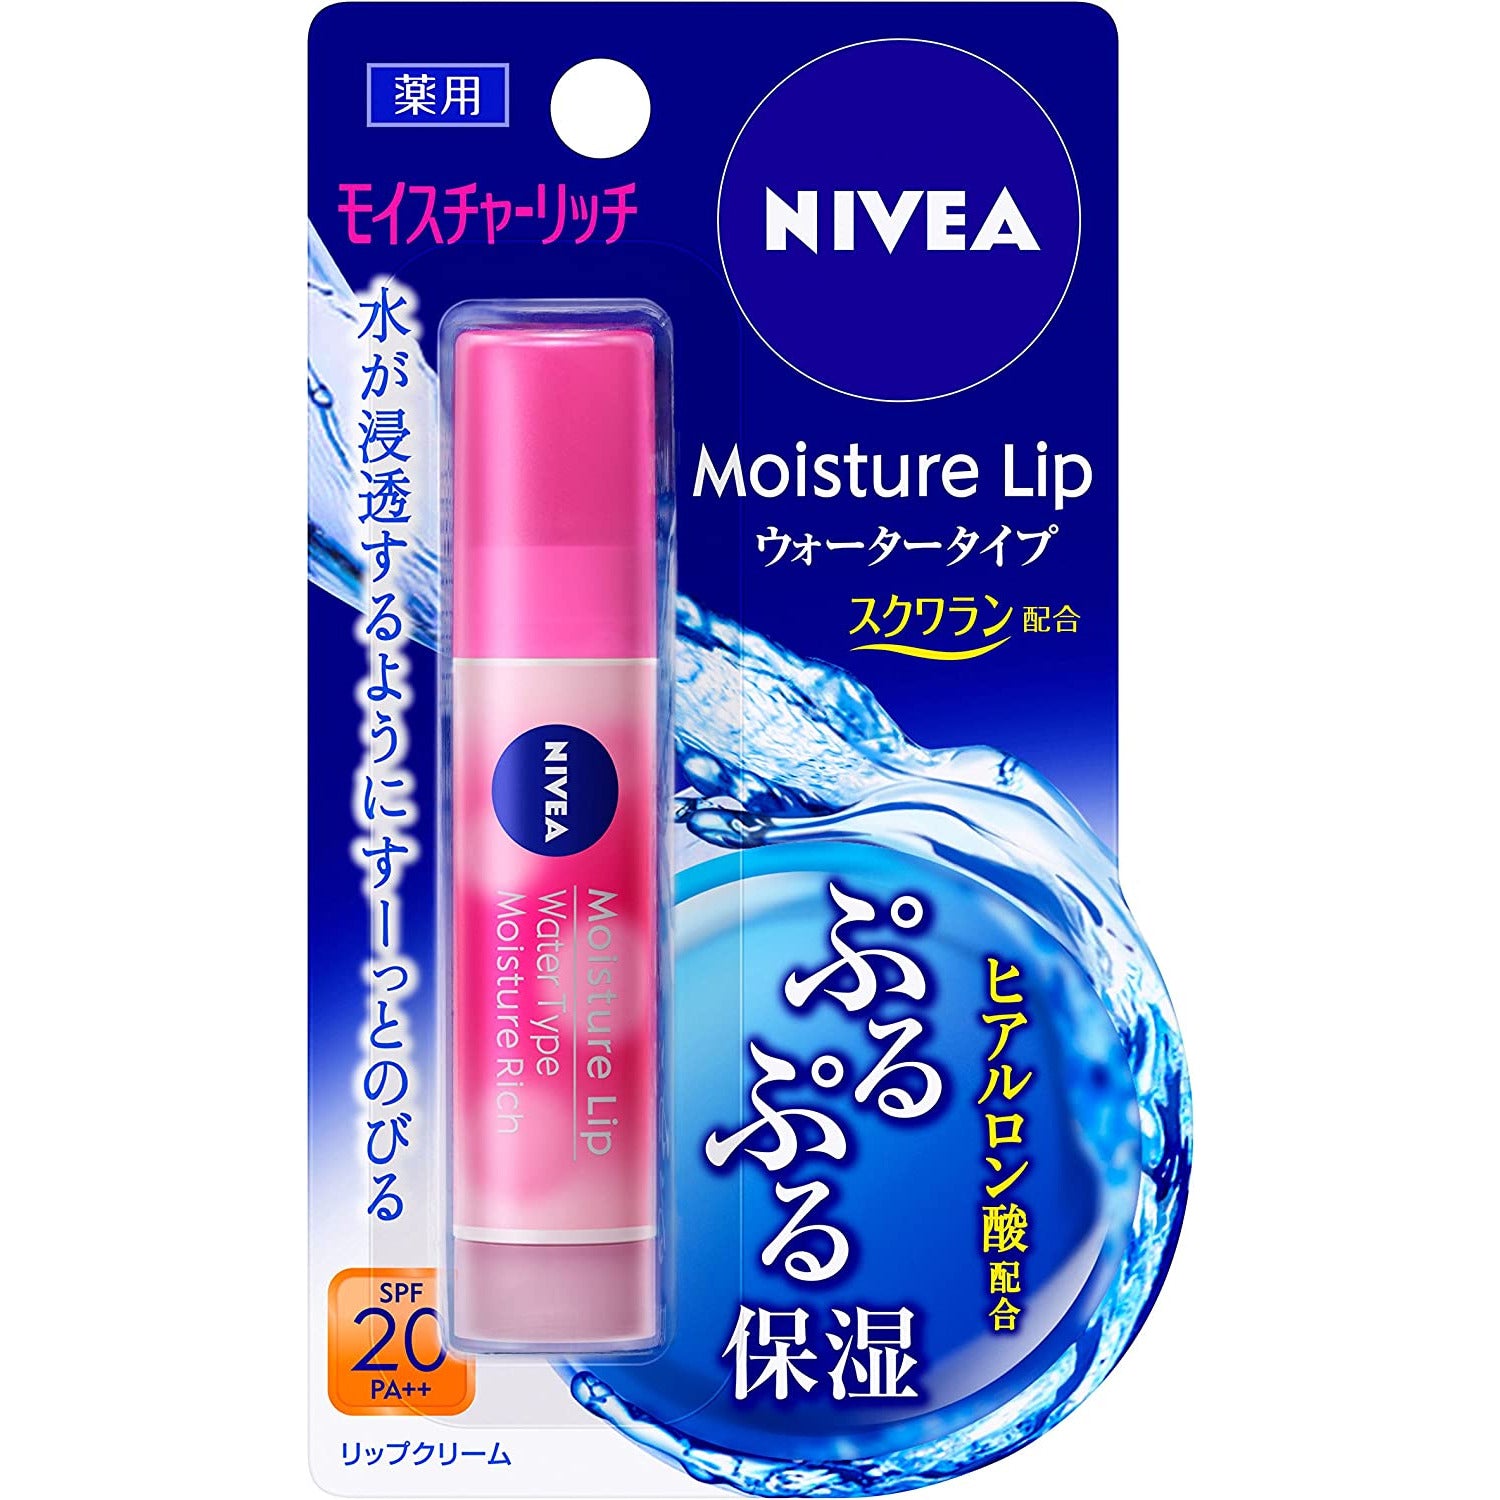 Kao Nivea Moisture Lip Water Type Moisture Rich 3.5g